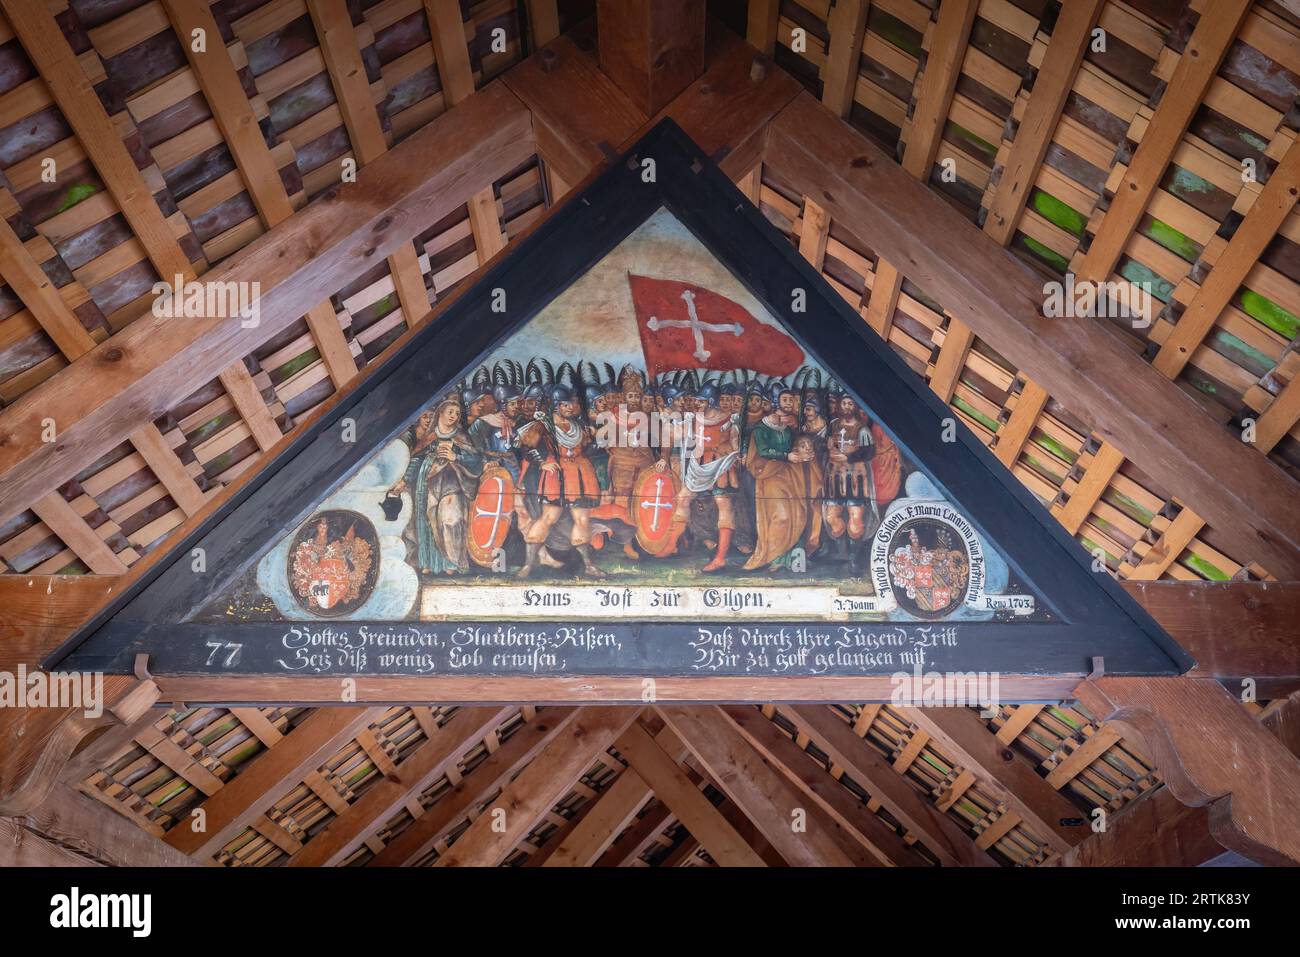 Theban Legion mit Verena und Regula - Gemälde mit Ereignissen aus der Luzerner Geschichte an der Kapellbrücke - Luzern, Schweiz Stockfoto